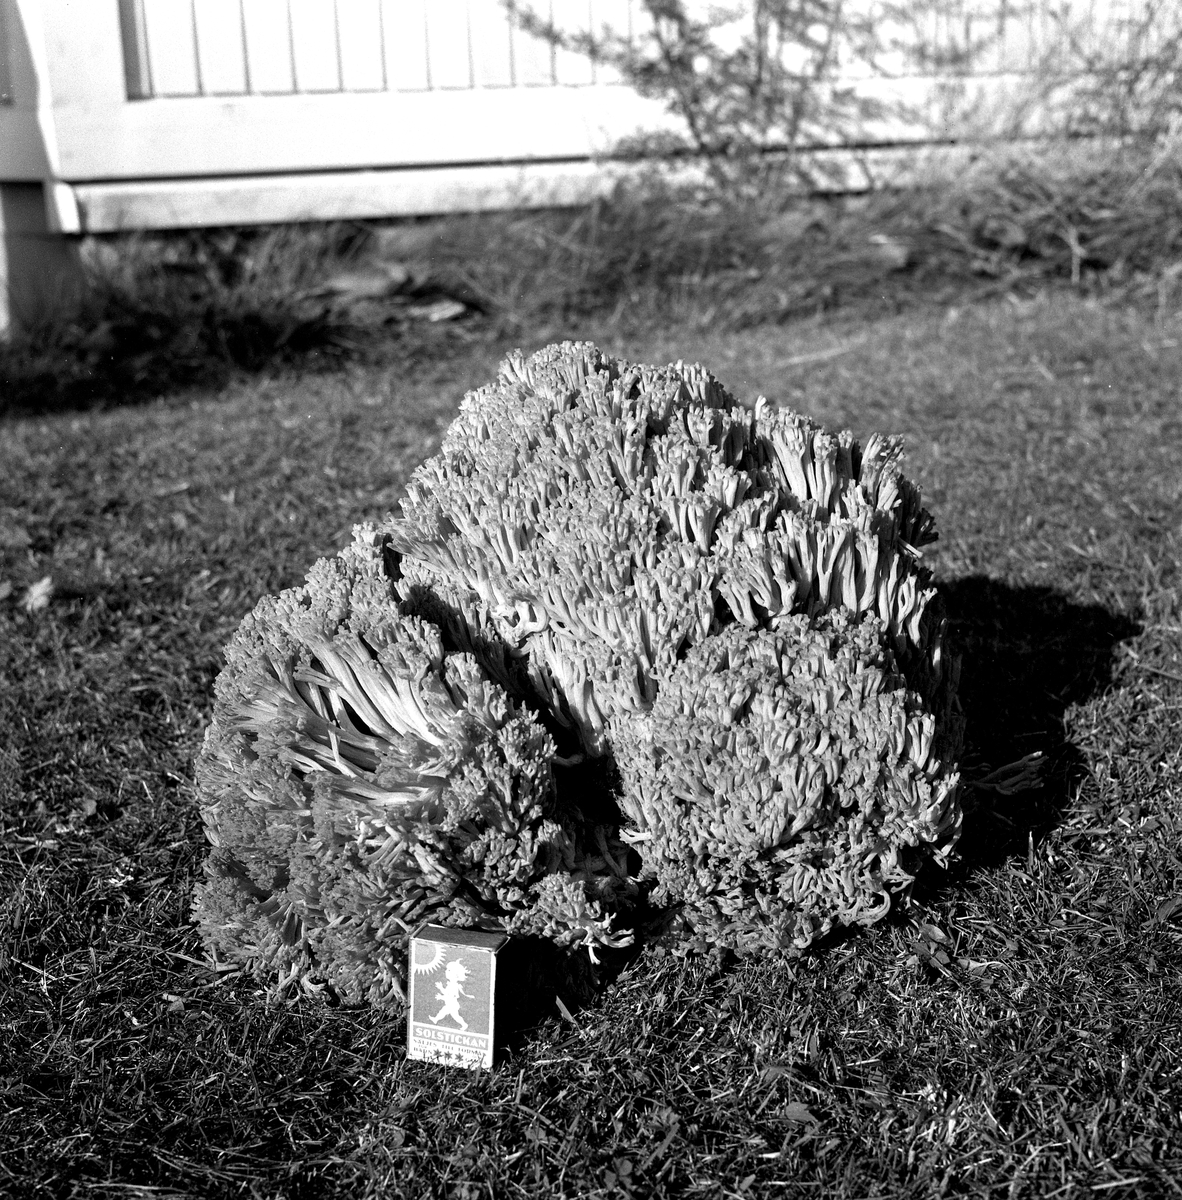 Blomkålssvamp på 6,5 kg.
14 augusti 1958.